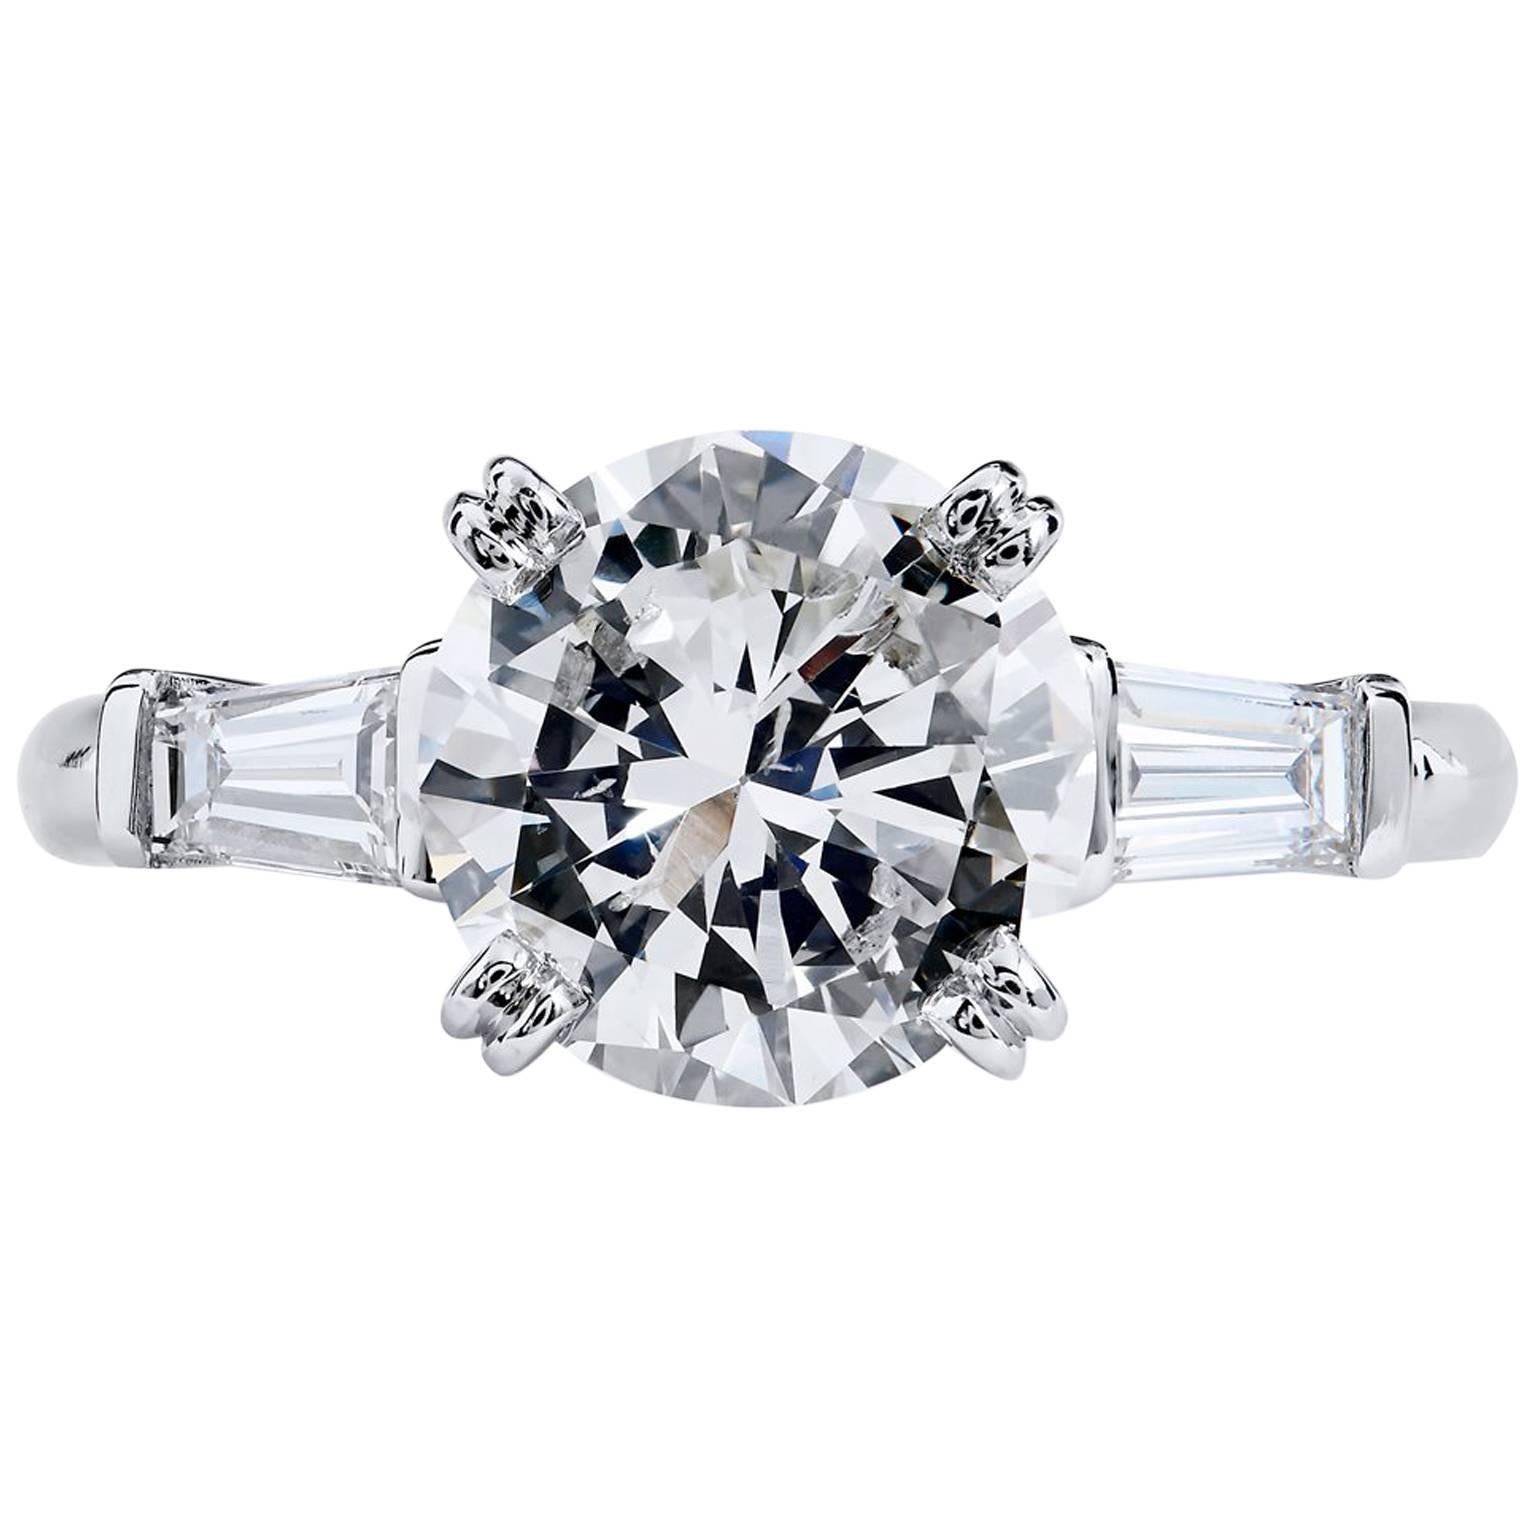 H & H 2.22 Carat Diamond Engagement Ring